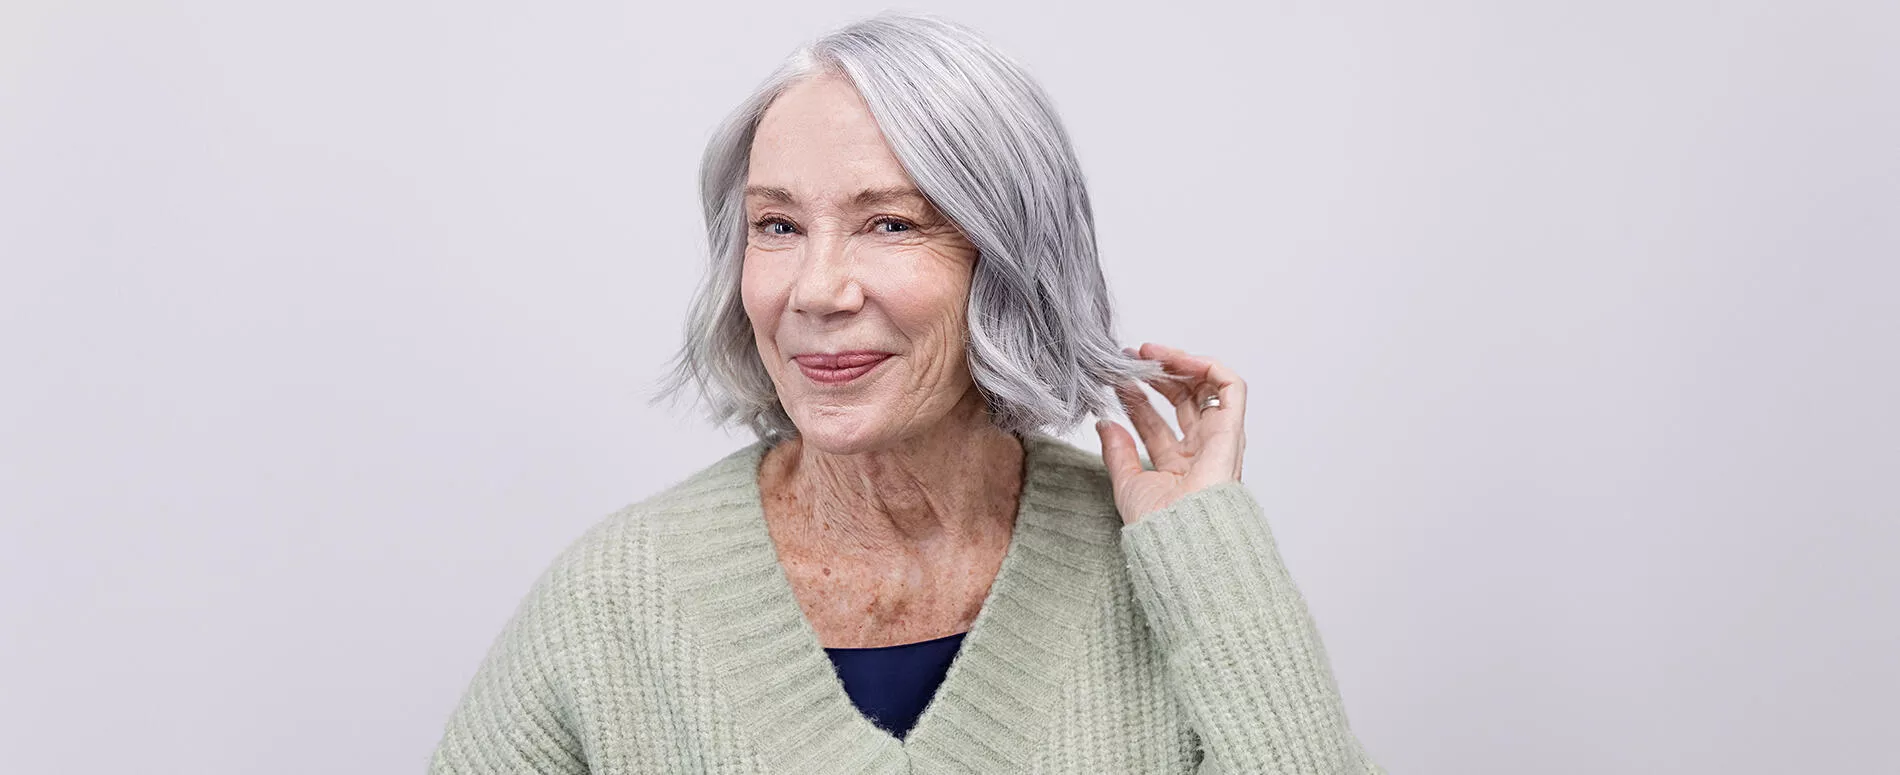 Foto di donna con capelli corti con colorazione argento luminoso